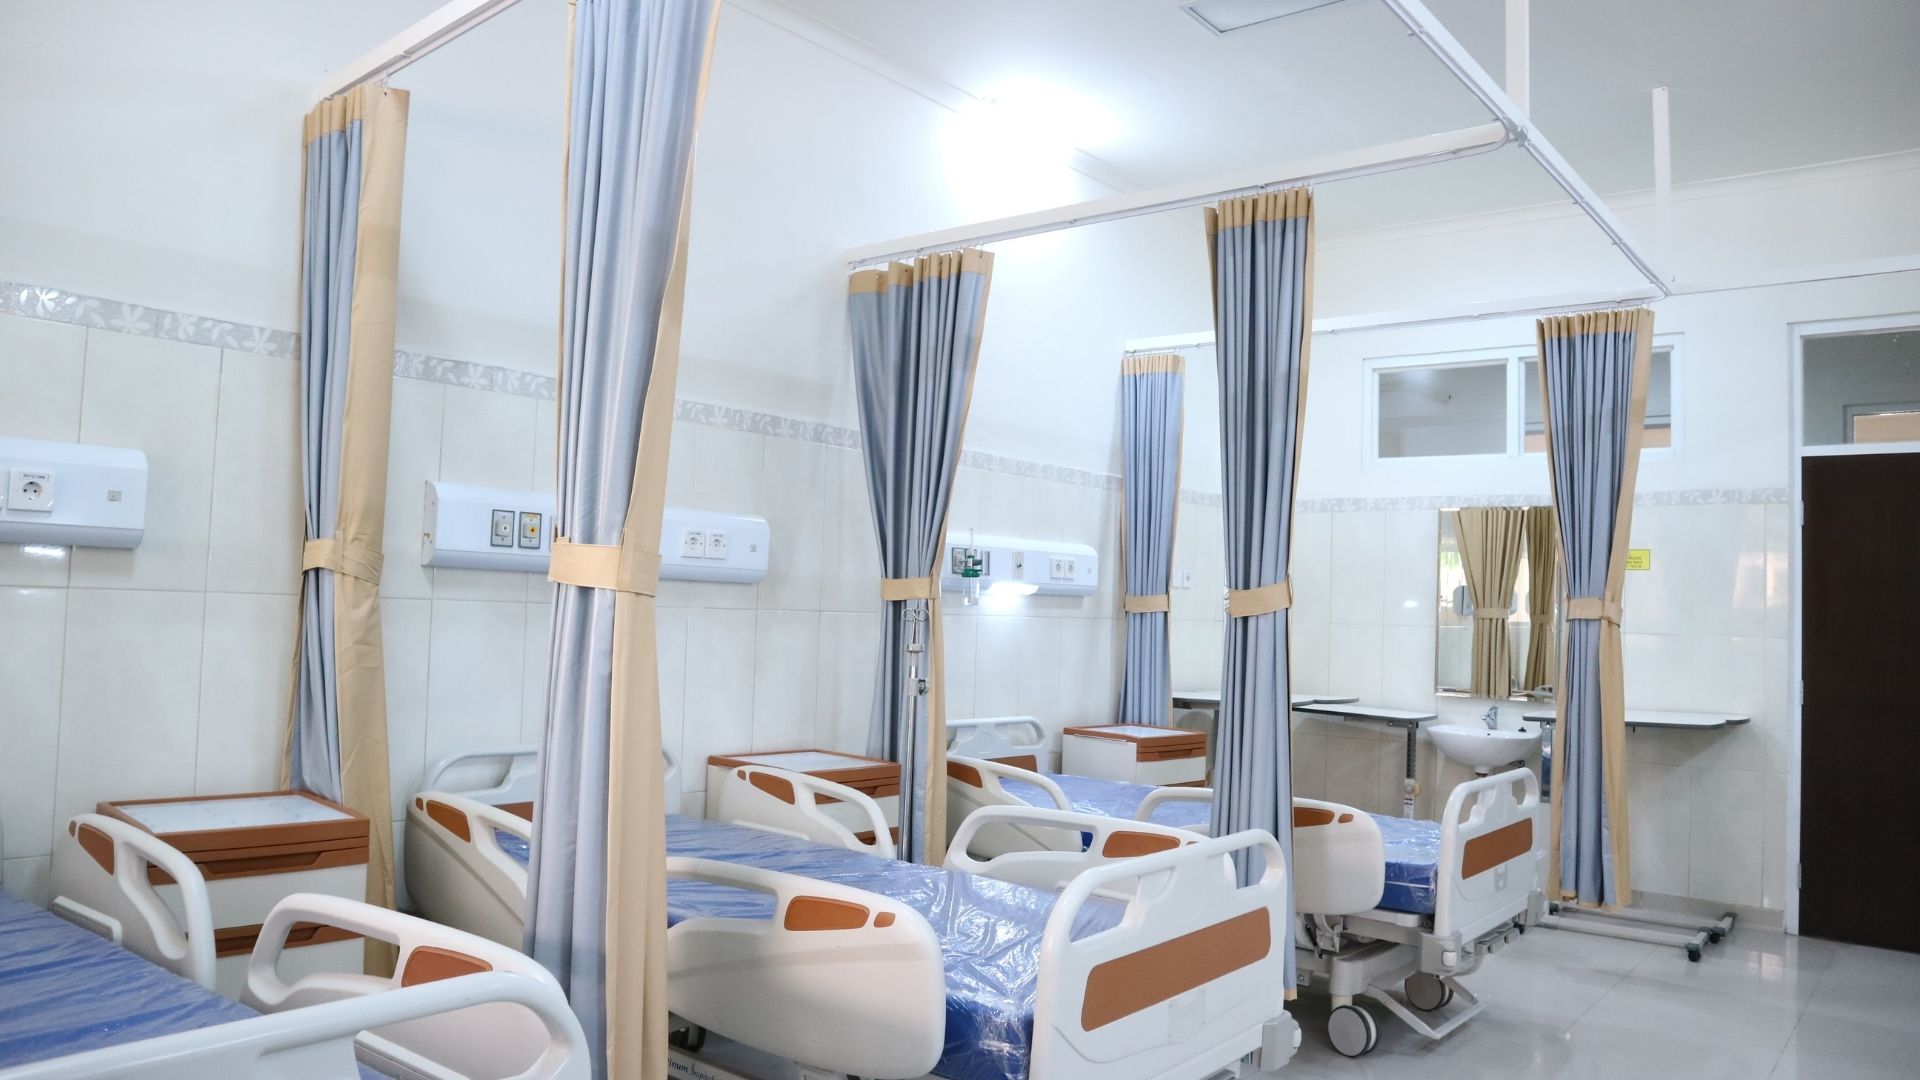 Saúde em primeiro lugar: veja a lista dos melhores hospitais de Ribeirão Preto.